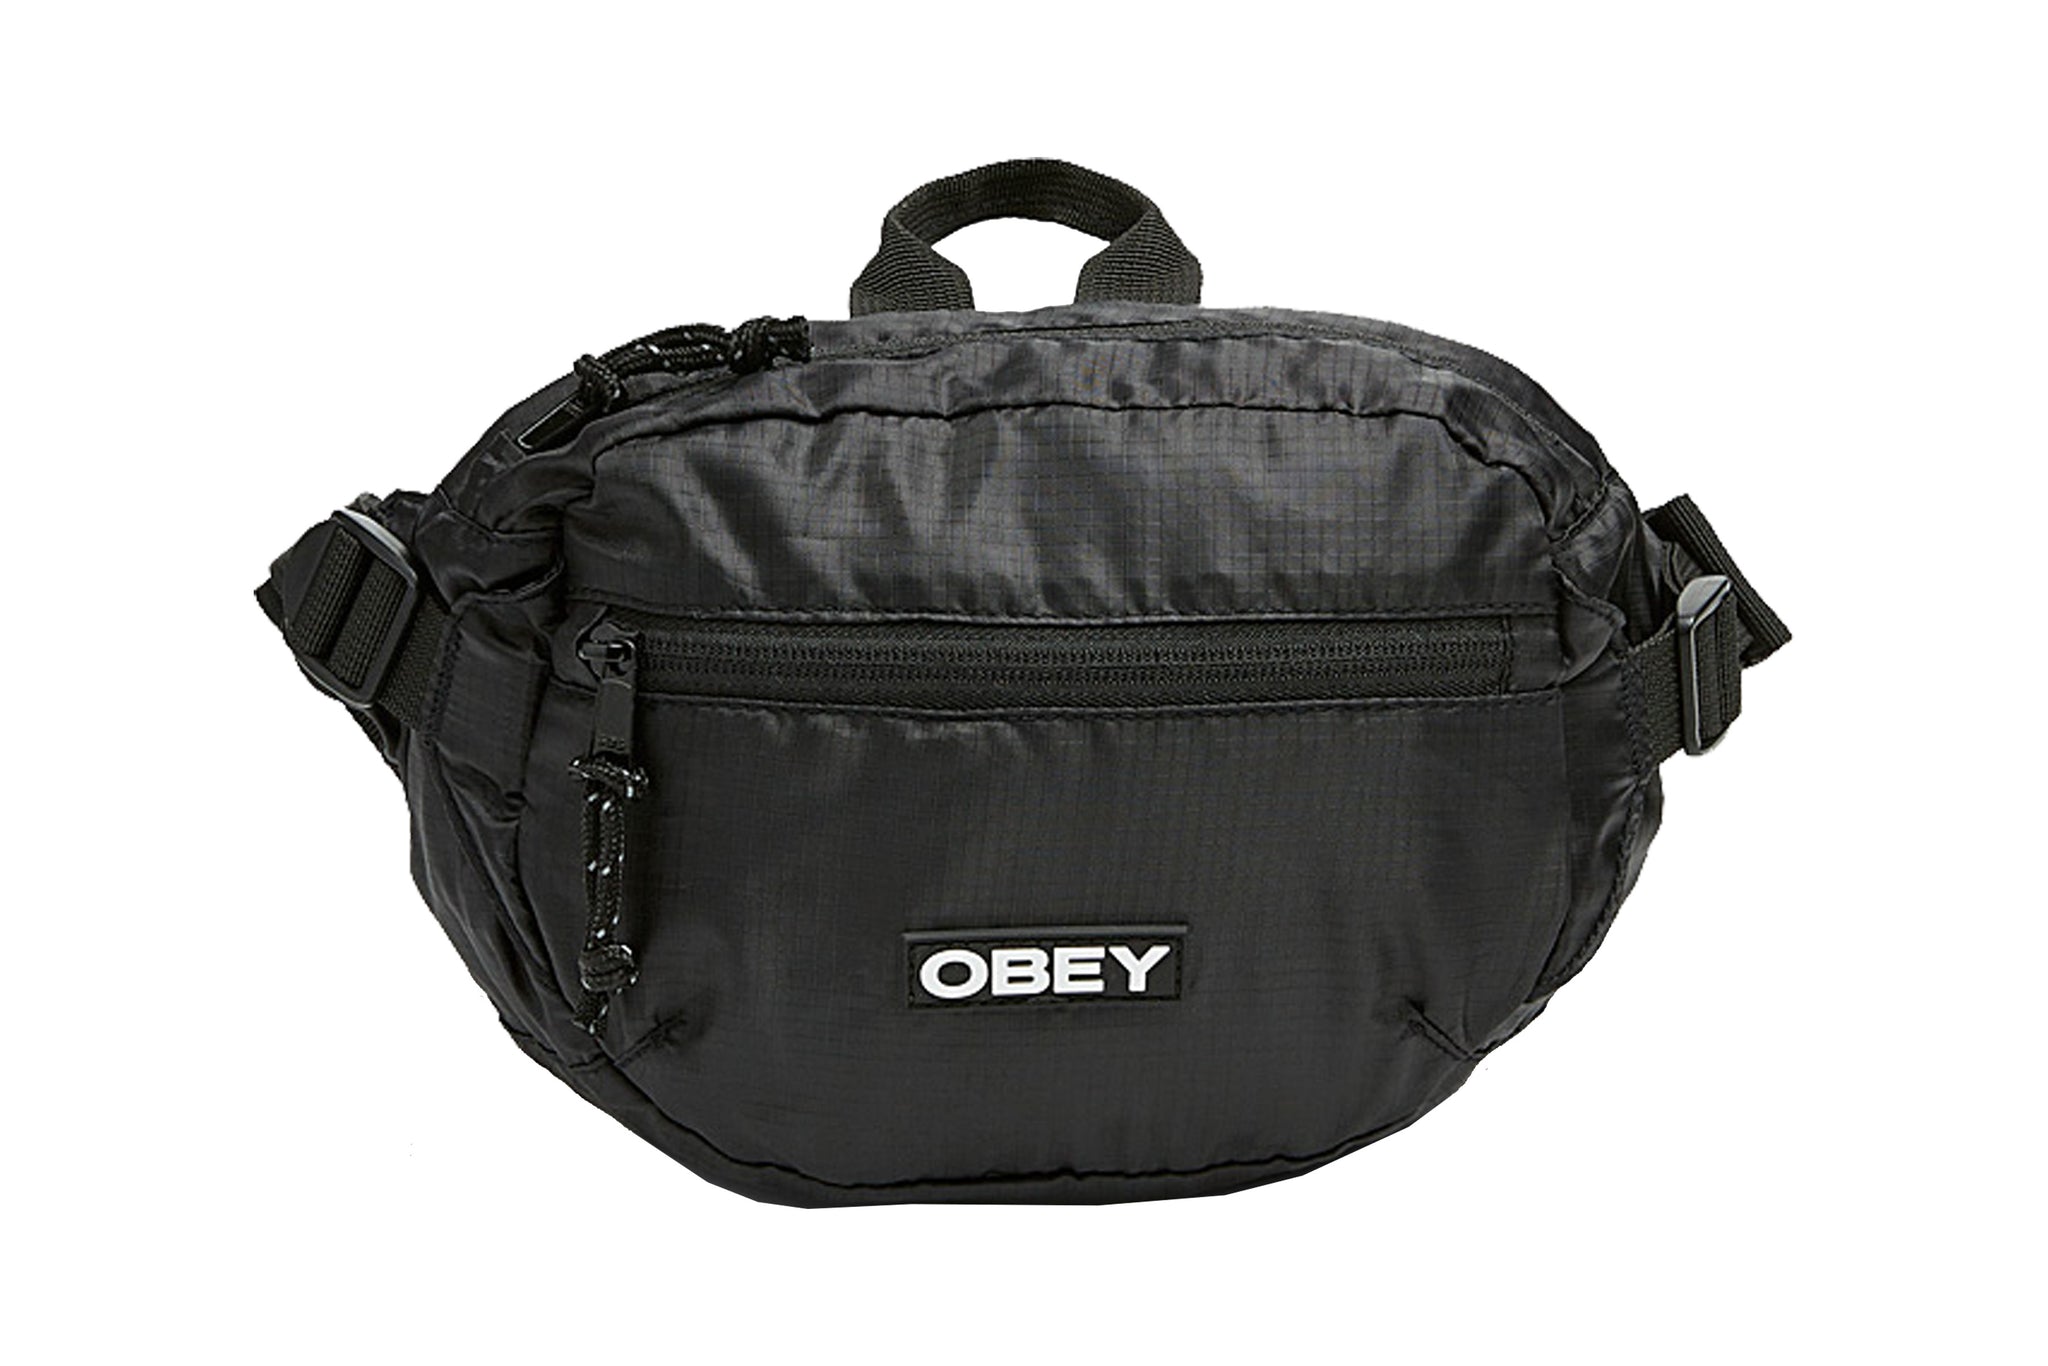 Obey commuter waist bag